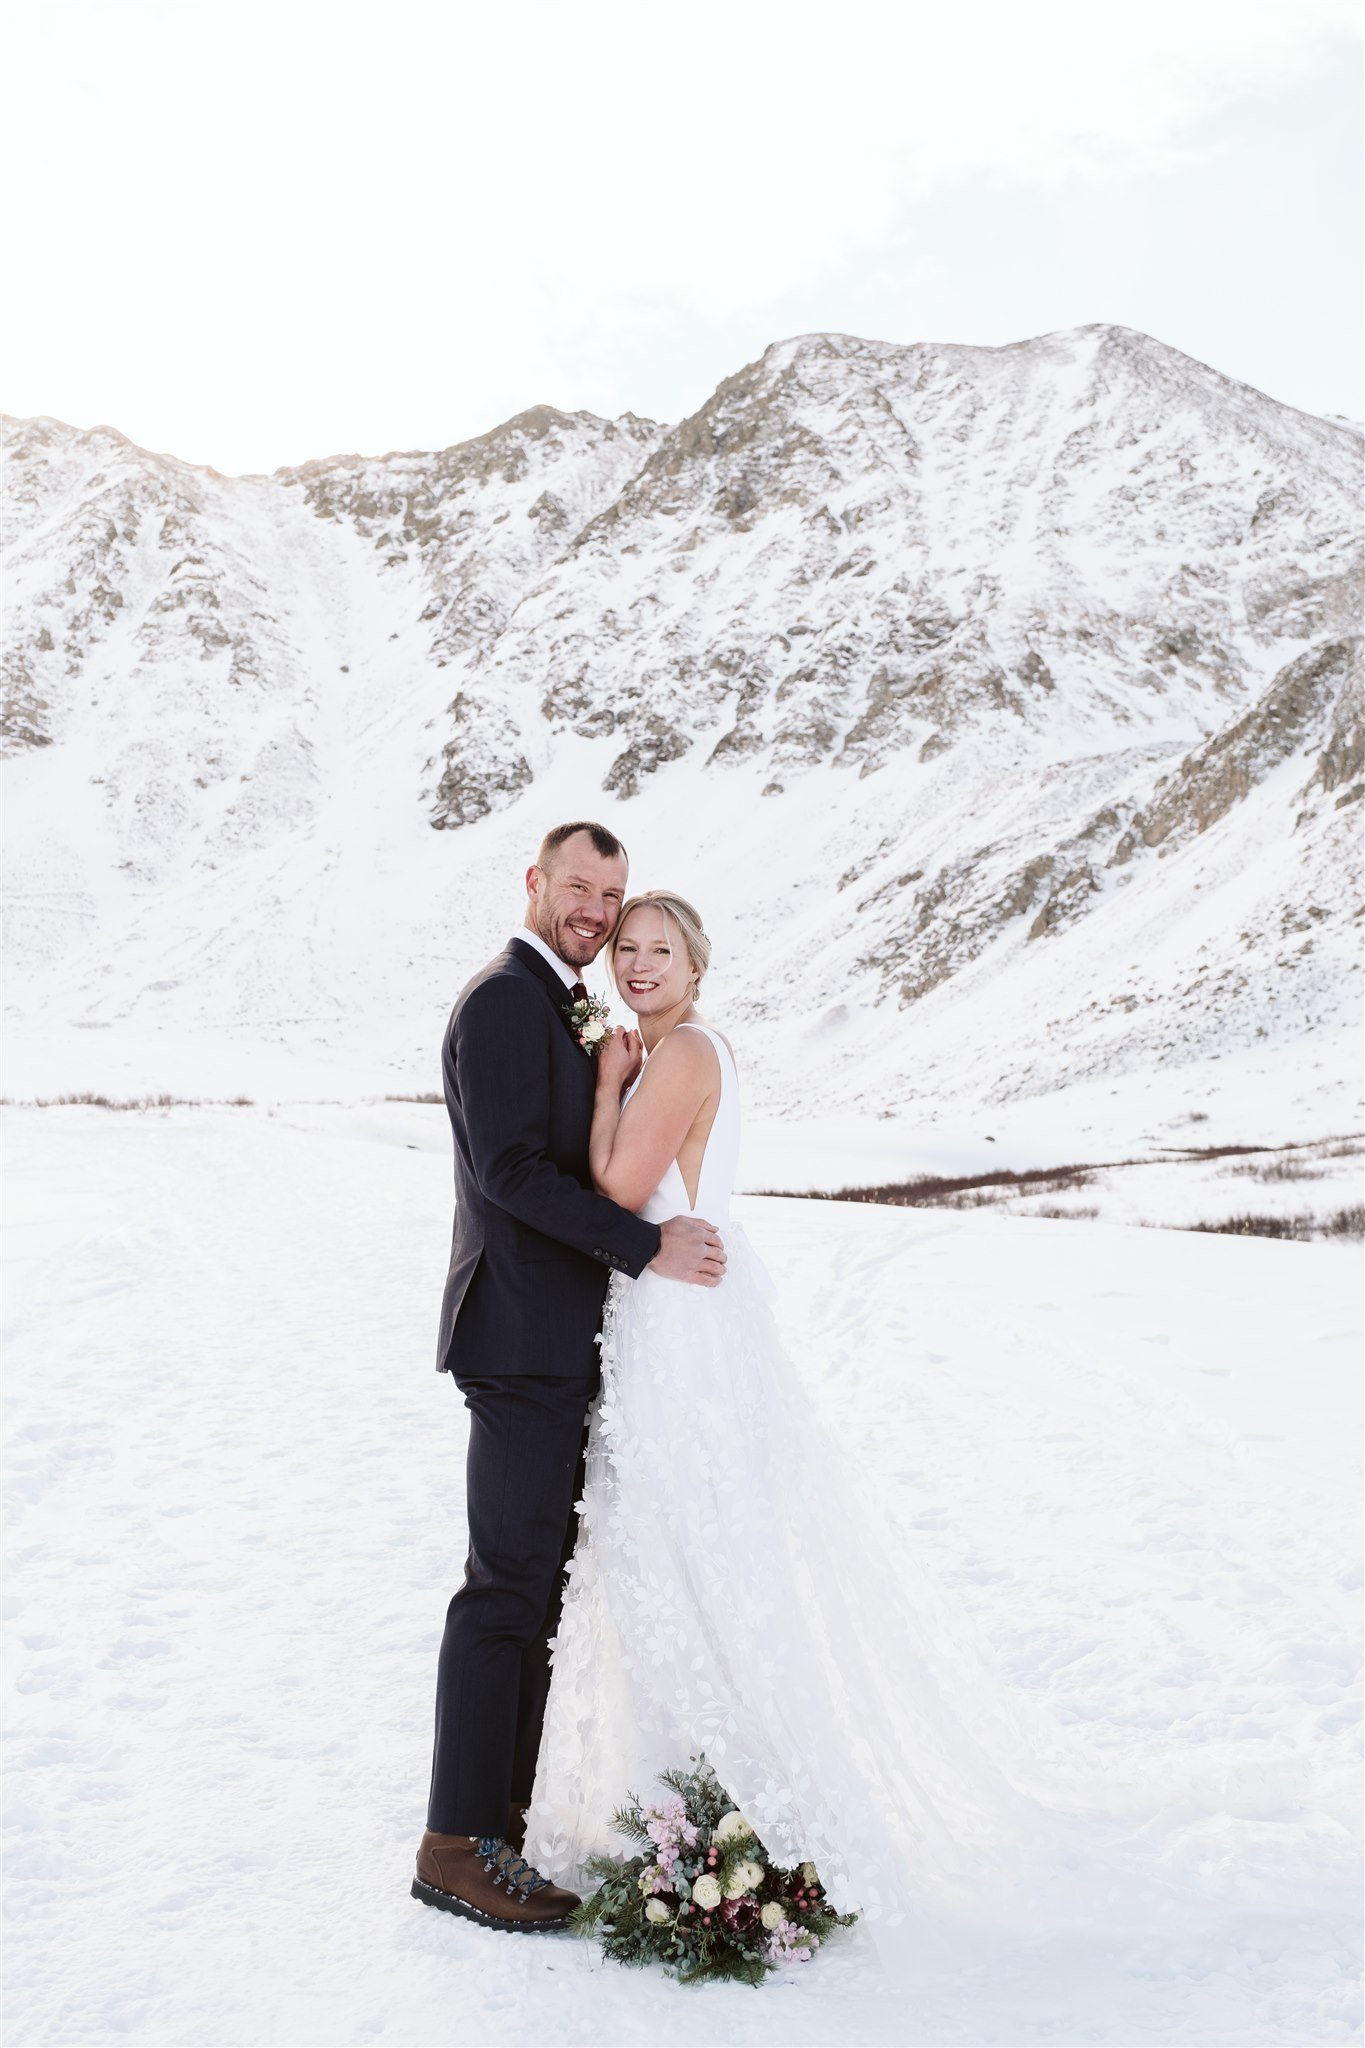  adventure couple mountain elopement winter Colorado 